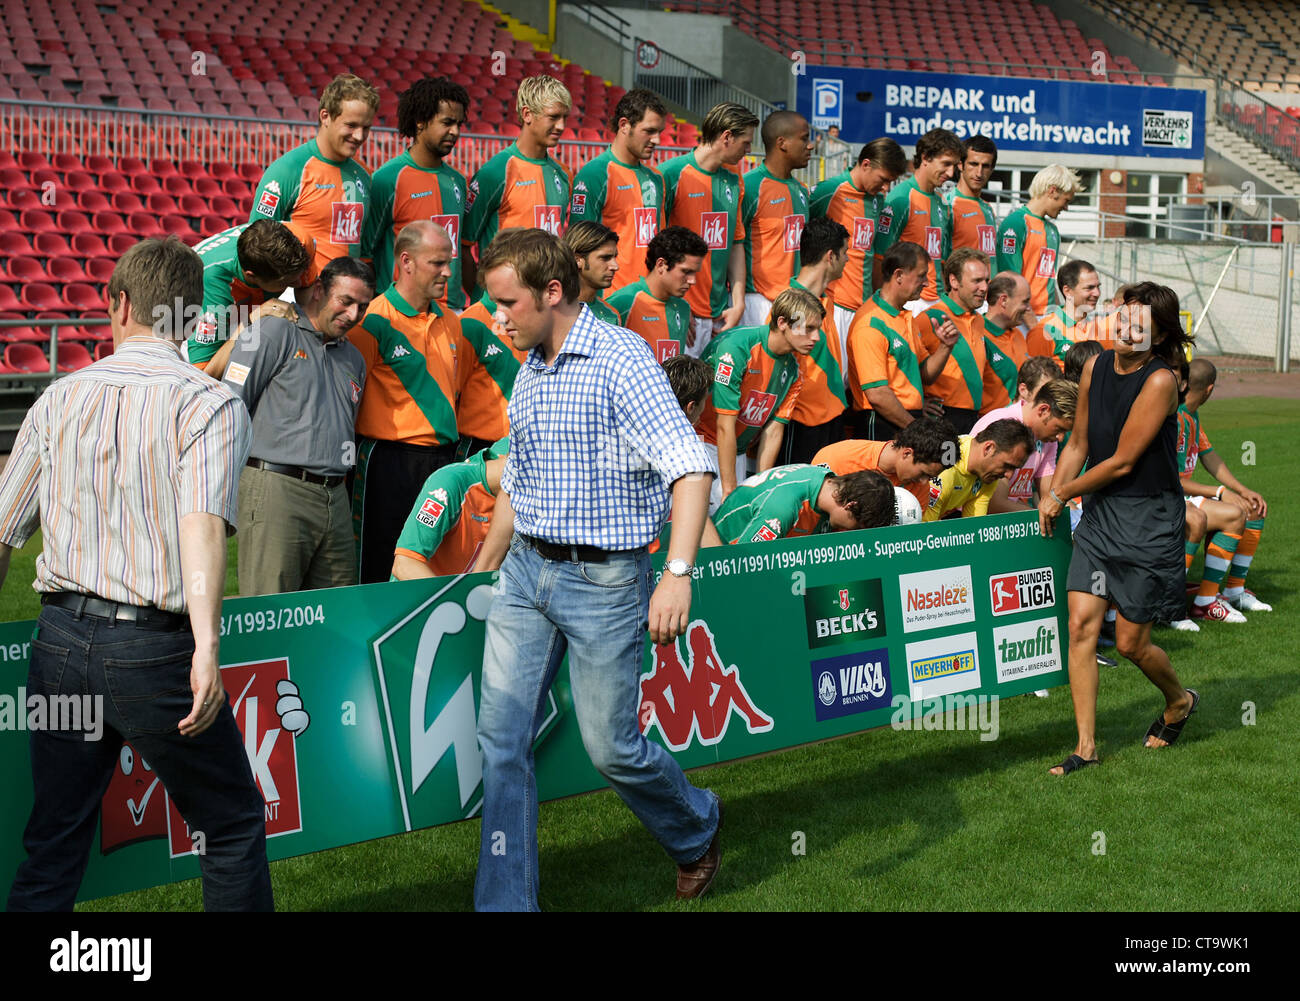 Foto de equipo del fútbol club Bundesliga Werder Bremen Foto de stock